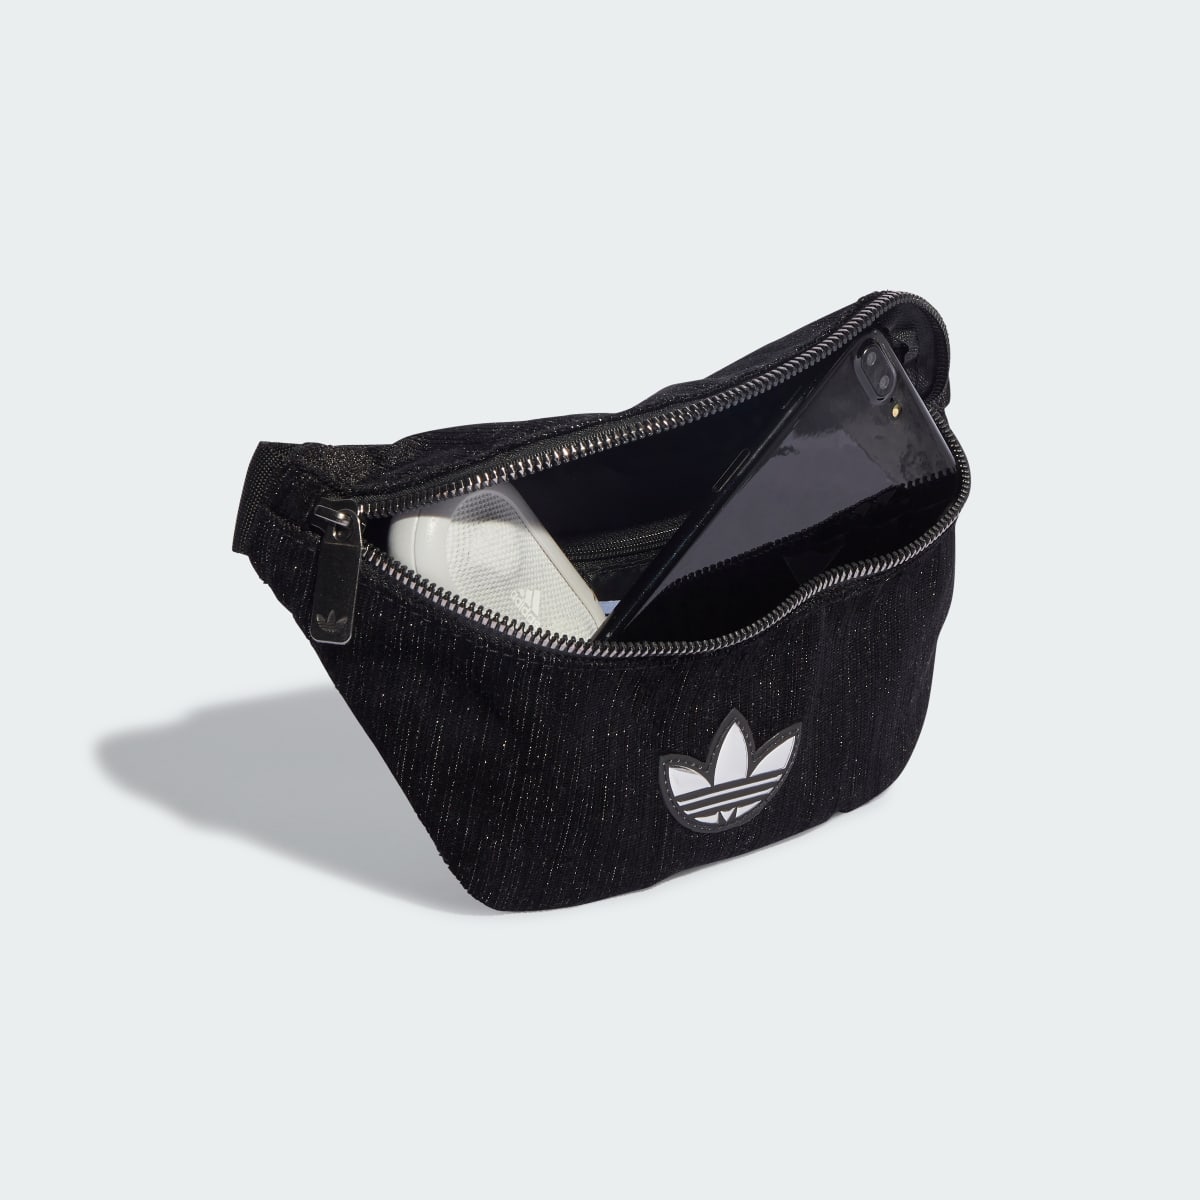 Adidas Glam Goth Waist Bag. 5